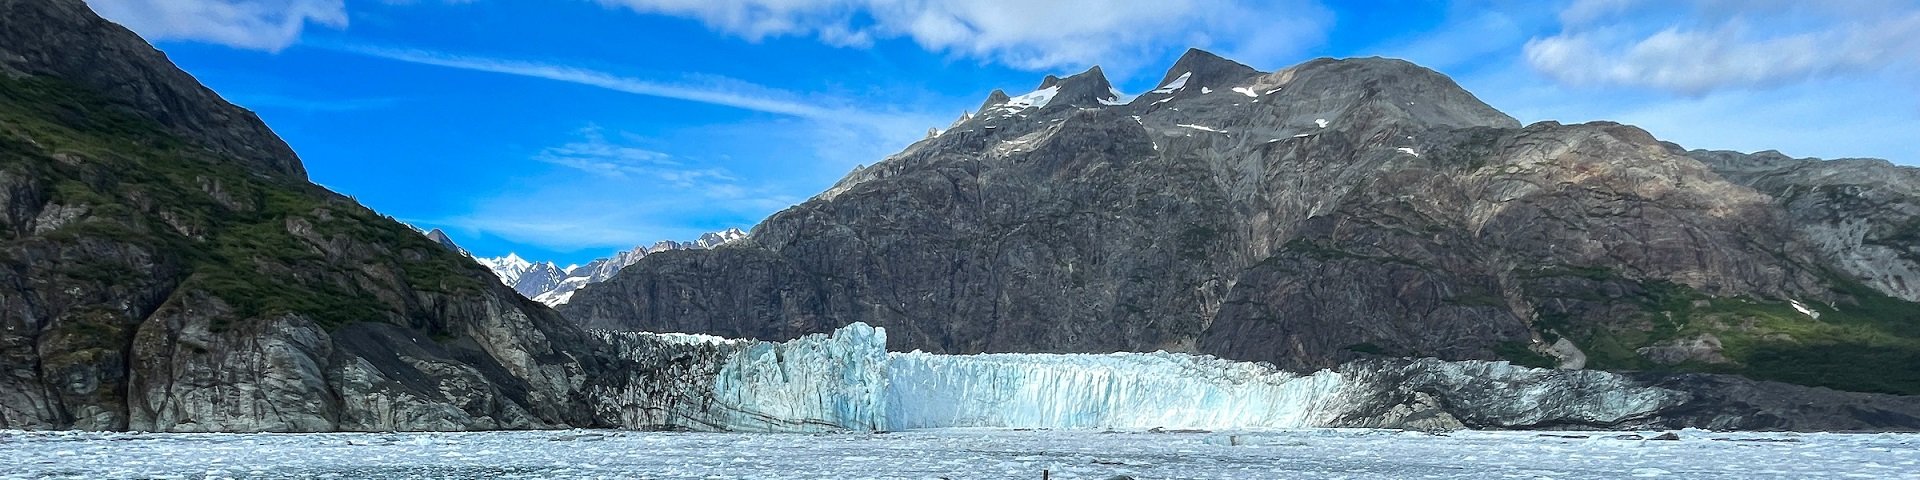 Schiffsbug in Bucht mit Gletscherkante